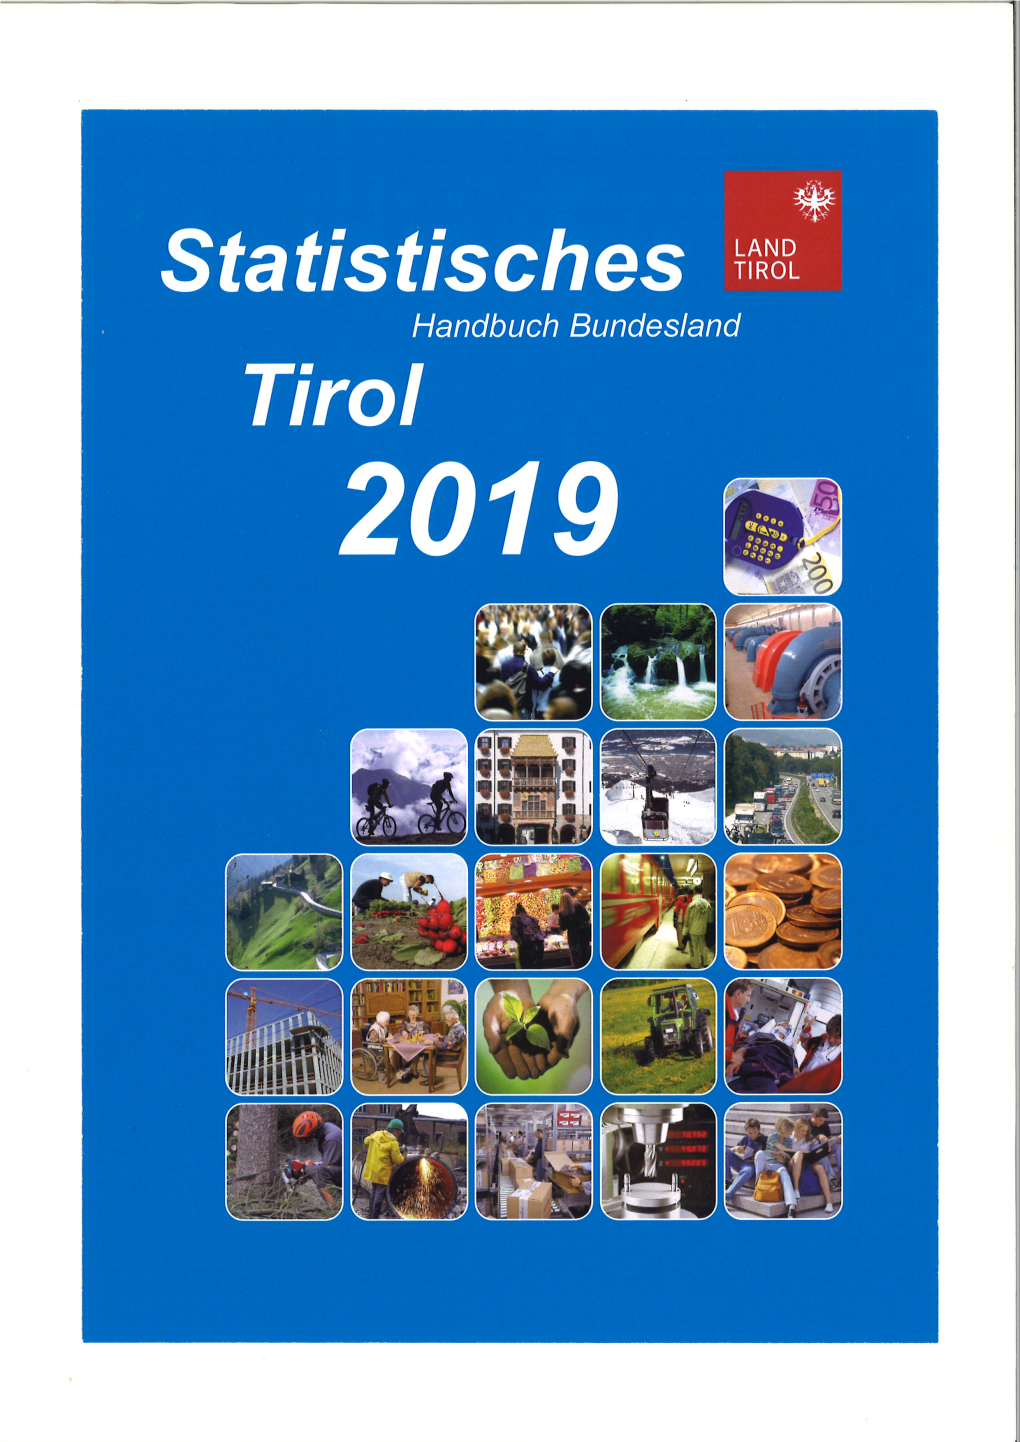 Statistisches Handbuch 2019